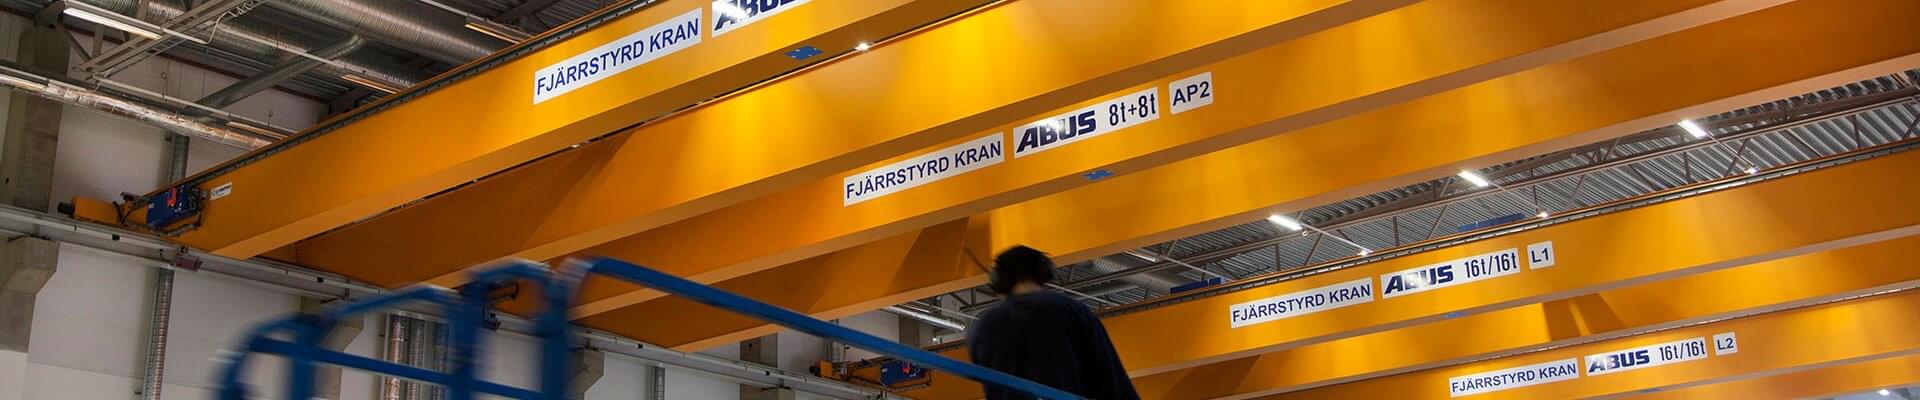 ABUS-kranar i metallformningsindustrin i Sverige